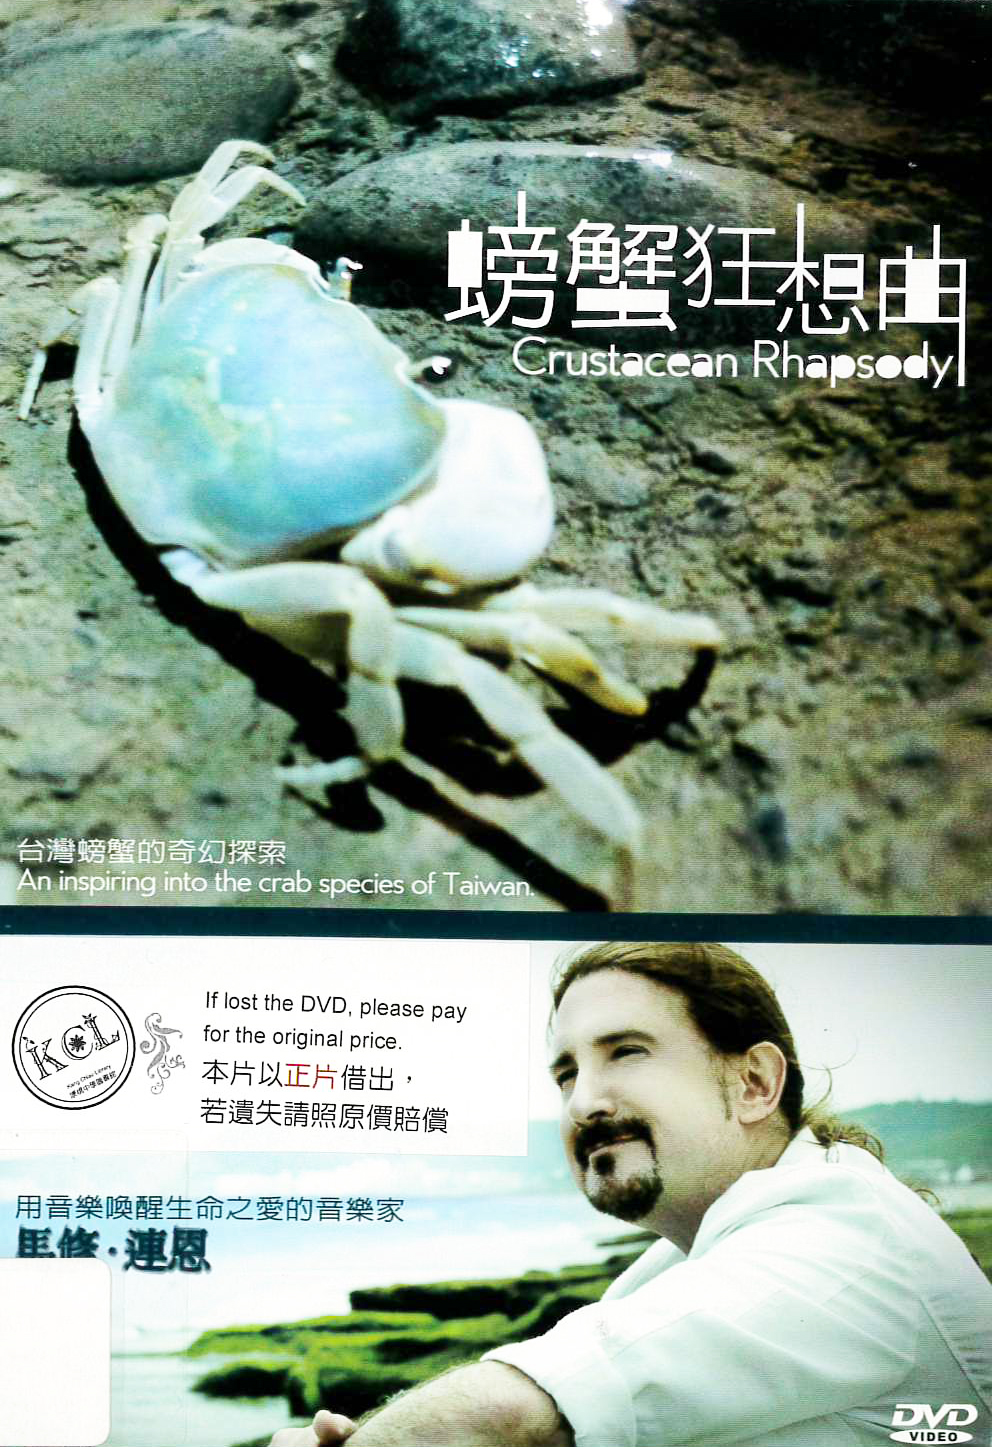 螃蟹狂想曲 : Crustacean Rhapsody : 台灣螃蟹物種的奇幻探索 : an inspiring exploration into the crab species of Taiwan